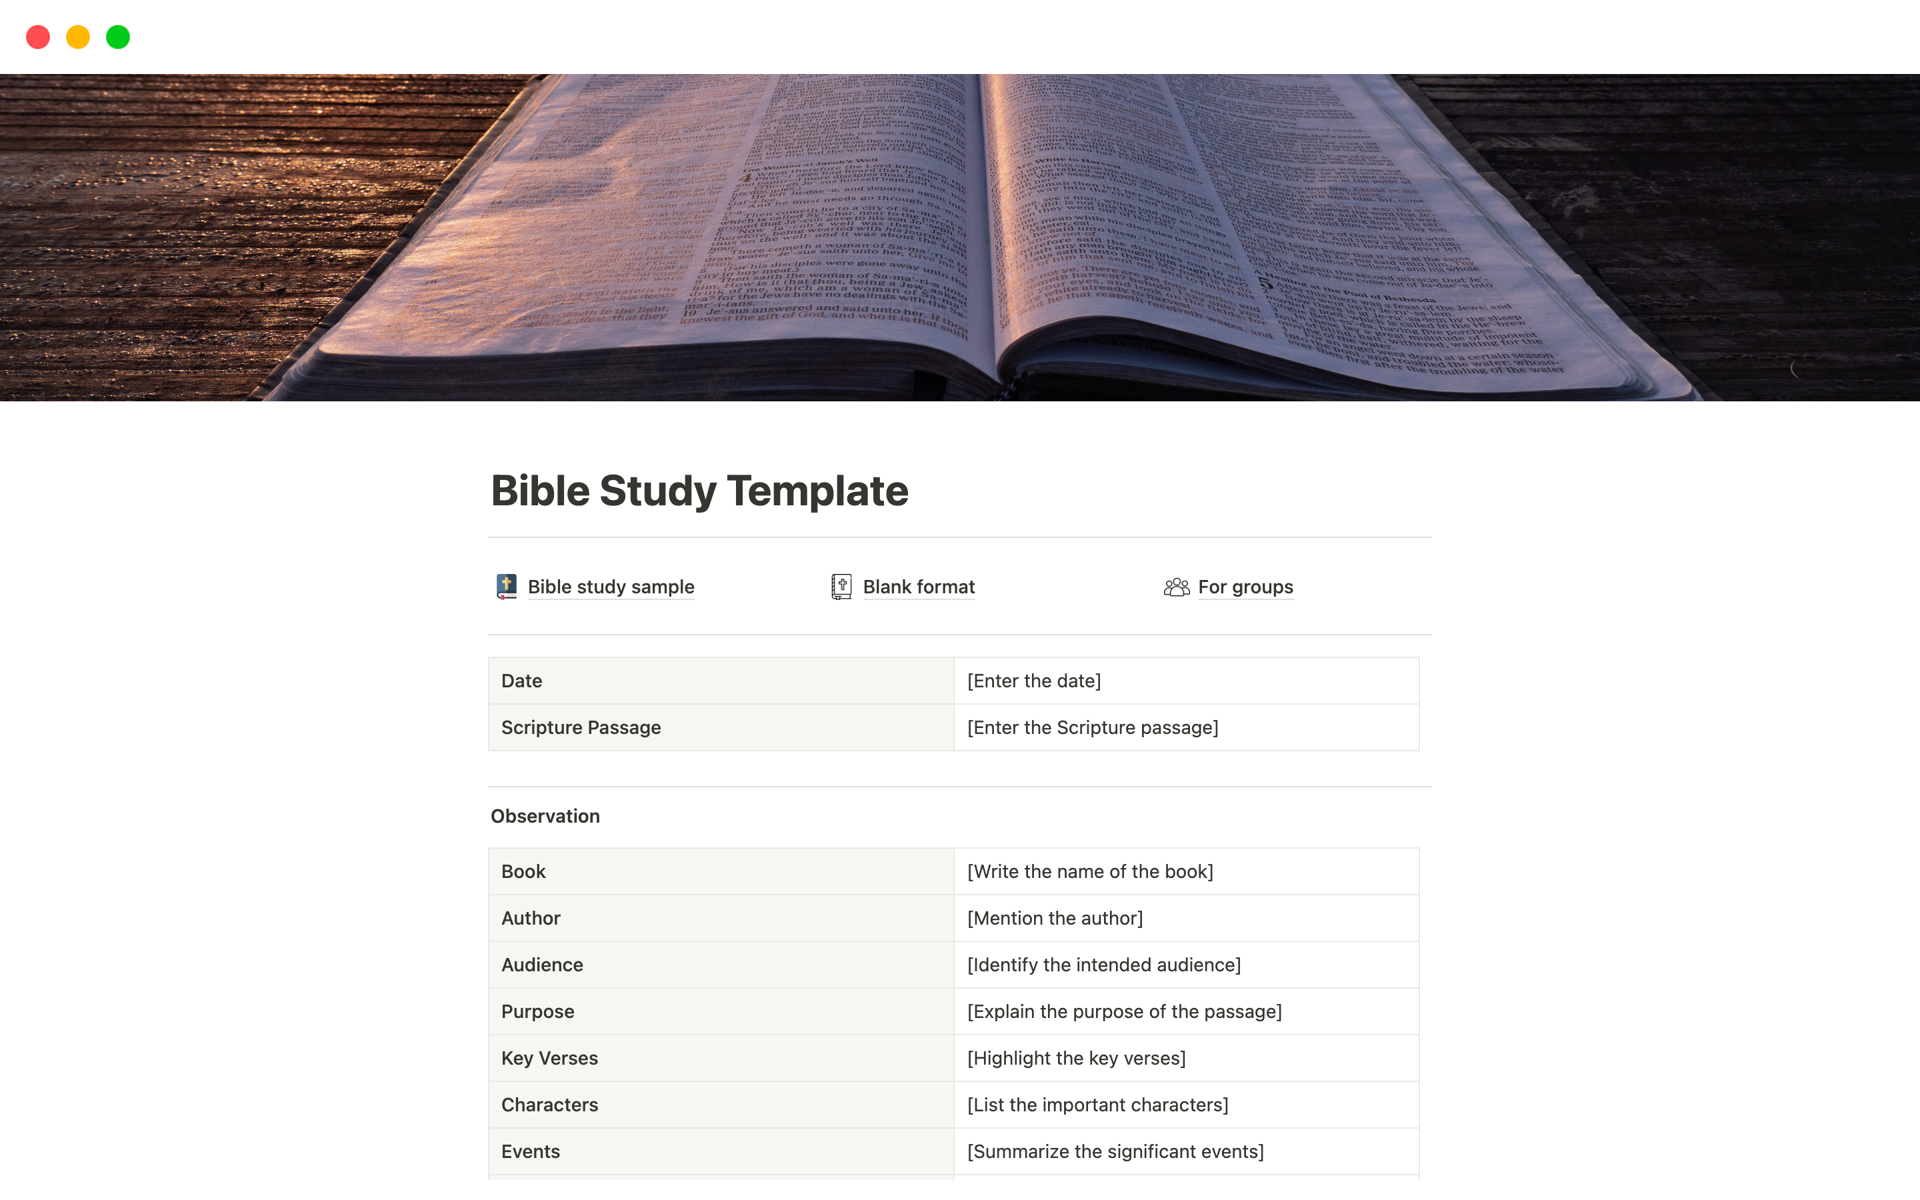 Vista previa de plantilla para Bible Study Template on Notion